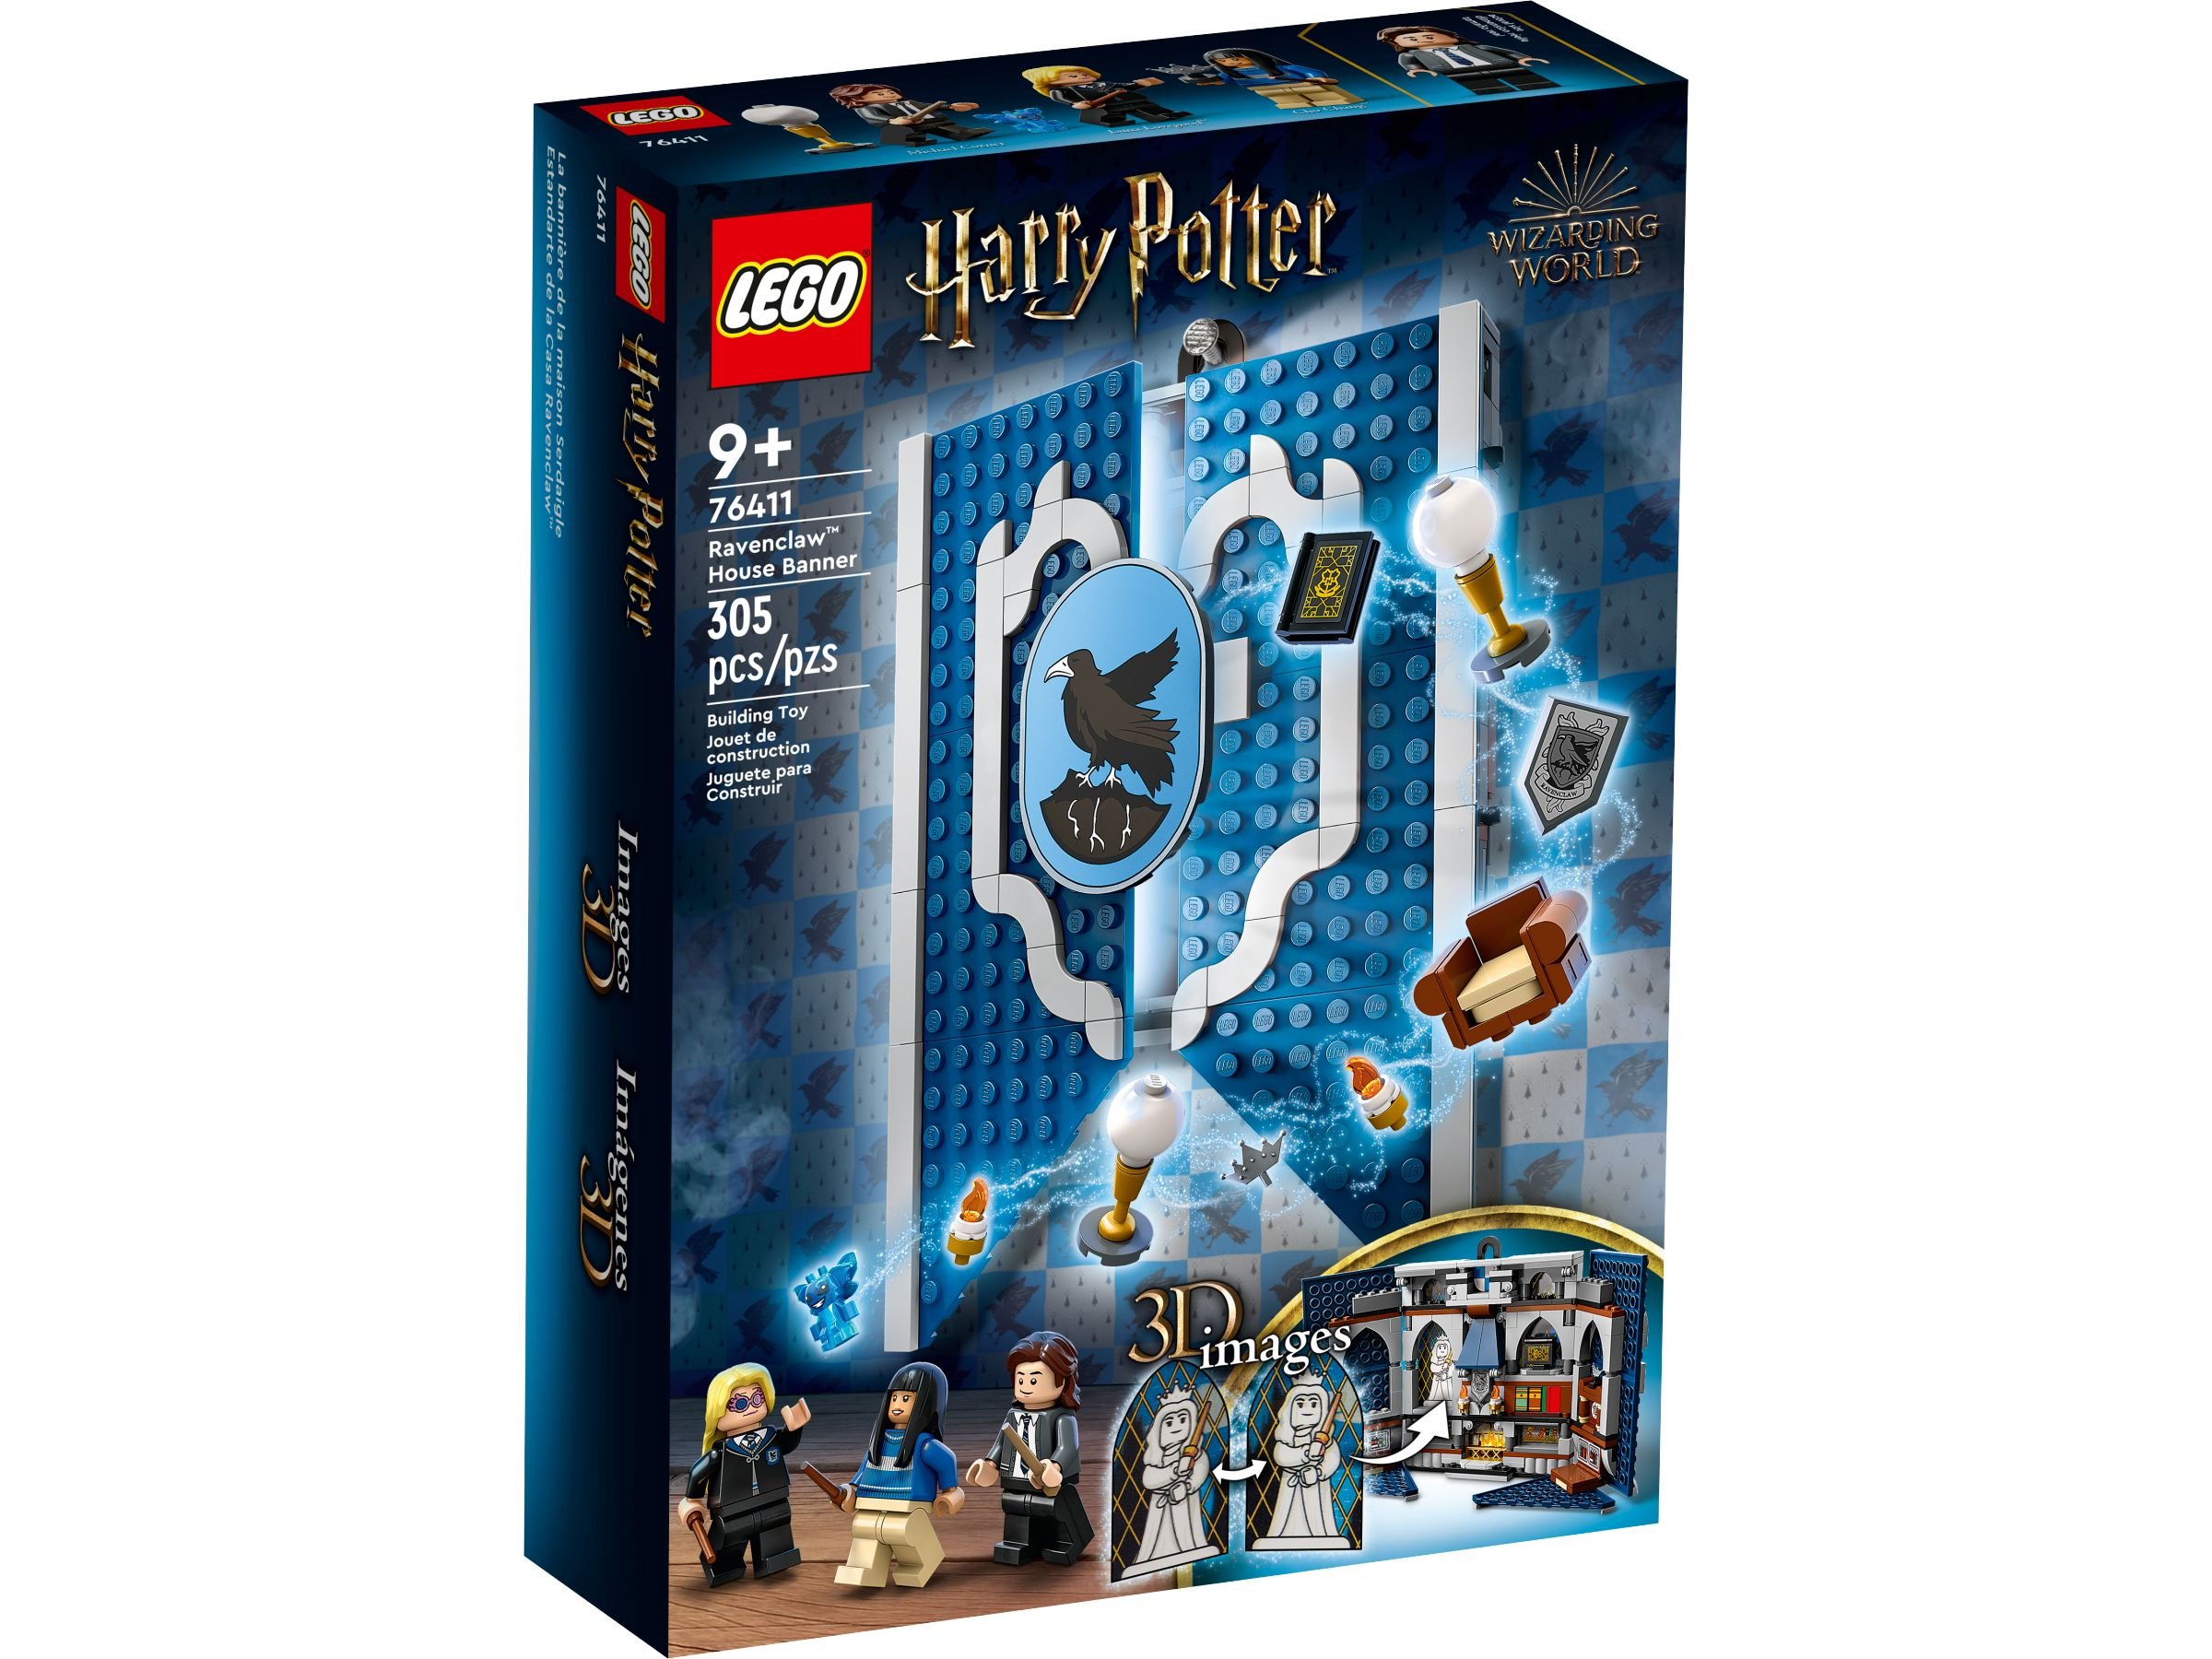 LEGO Harry Potter 5008136 Paket: Mut und Weisheit LEGO_76411_alt1.jpg